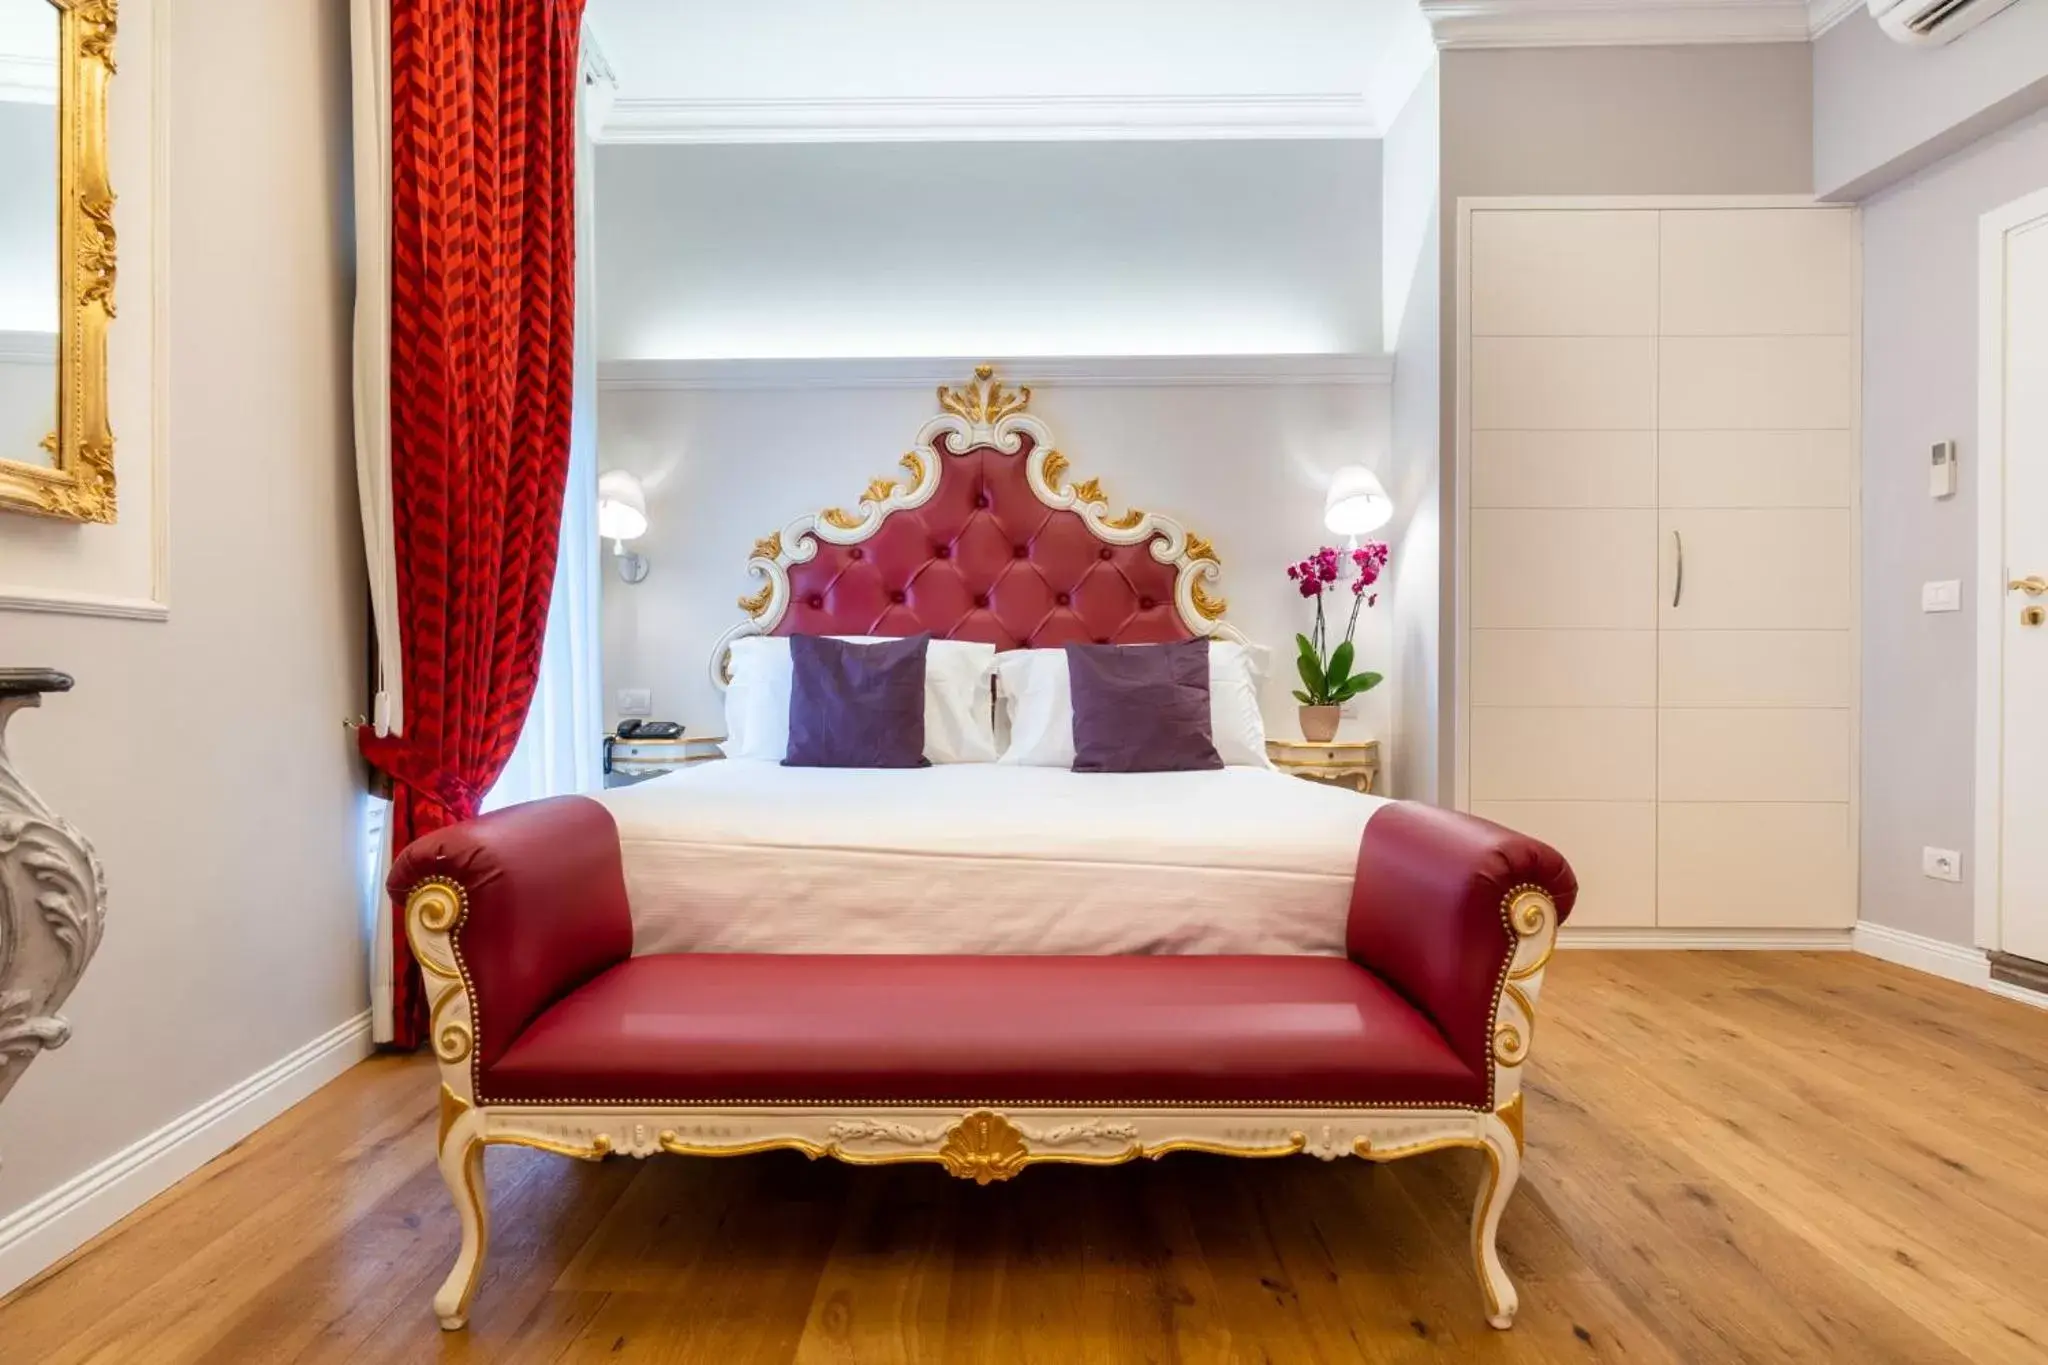 Bed in Art Hotel Villa Agape